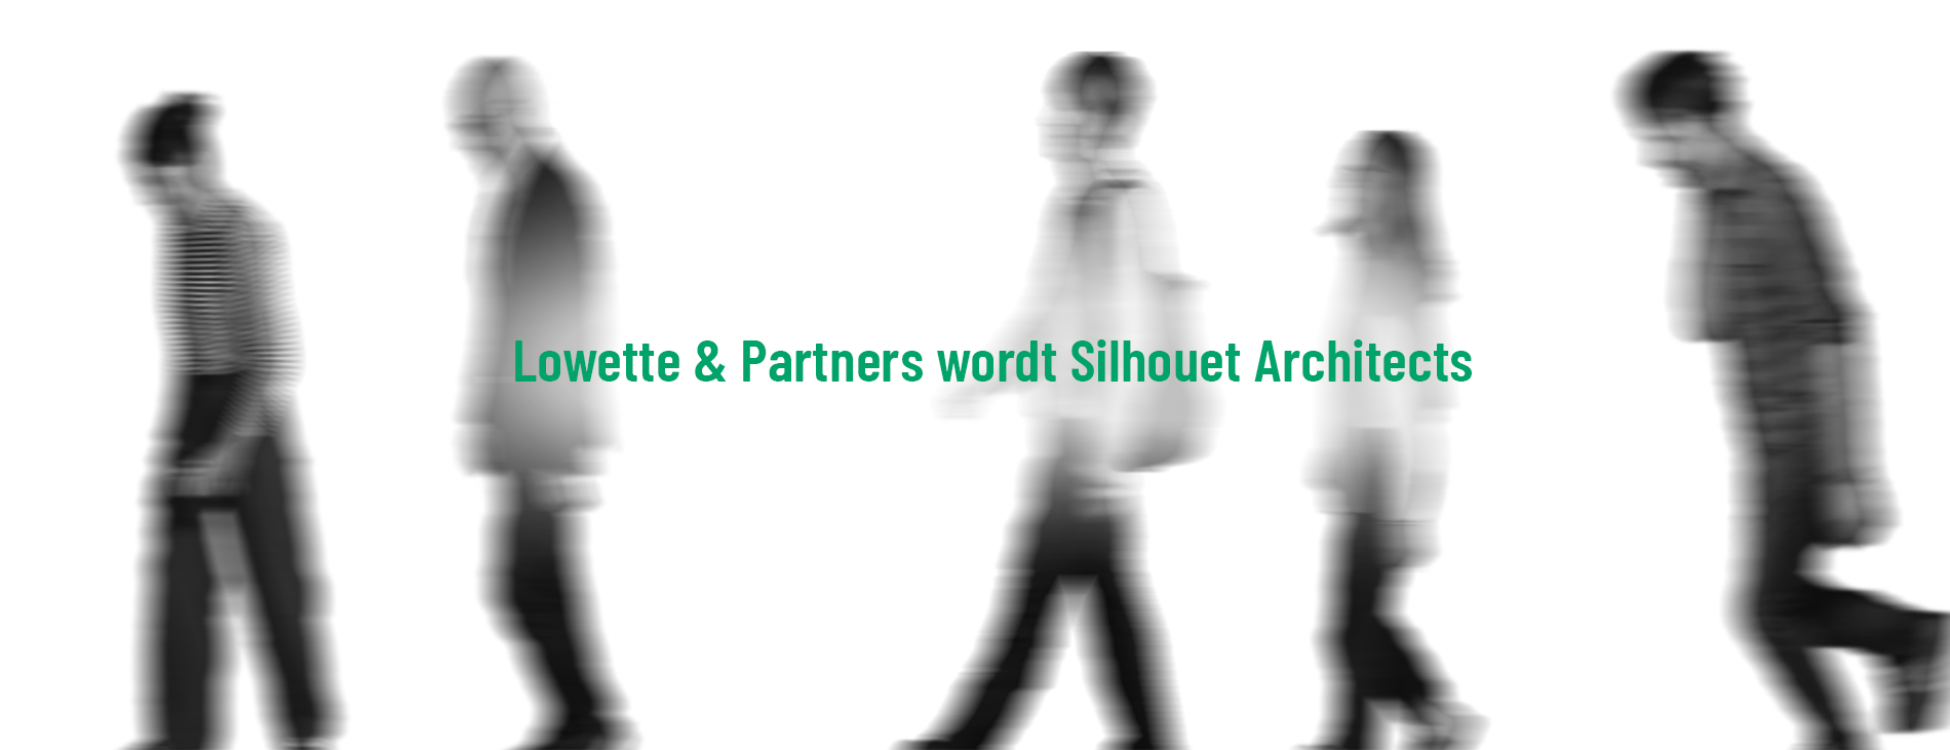 Lowette & Partners devient Silhouet architects